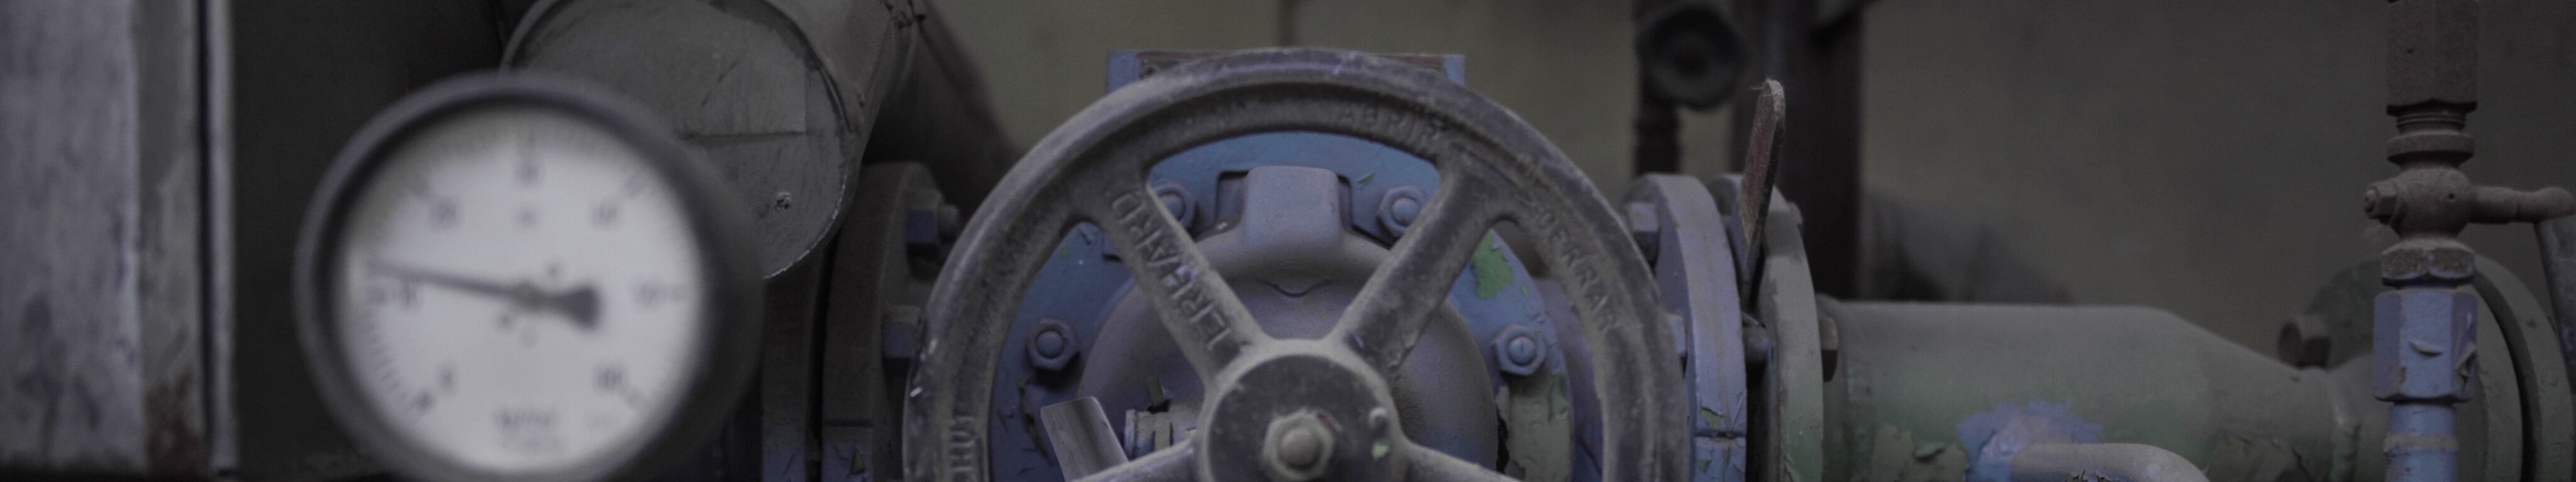 Detailaufnahme eines Steuerungsrades mit Druckanzeige einer historischen Maschine im LWL-Industriemuseum Henrichshütte in Hattingen